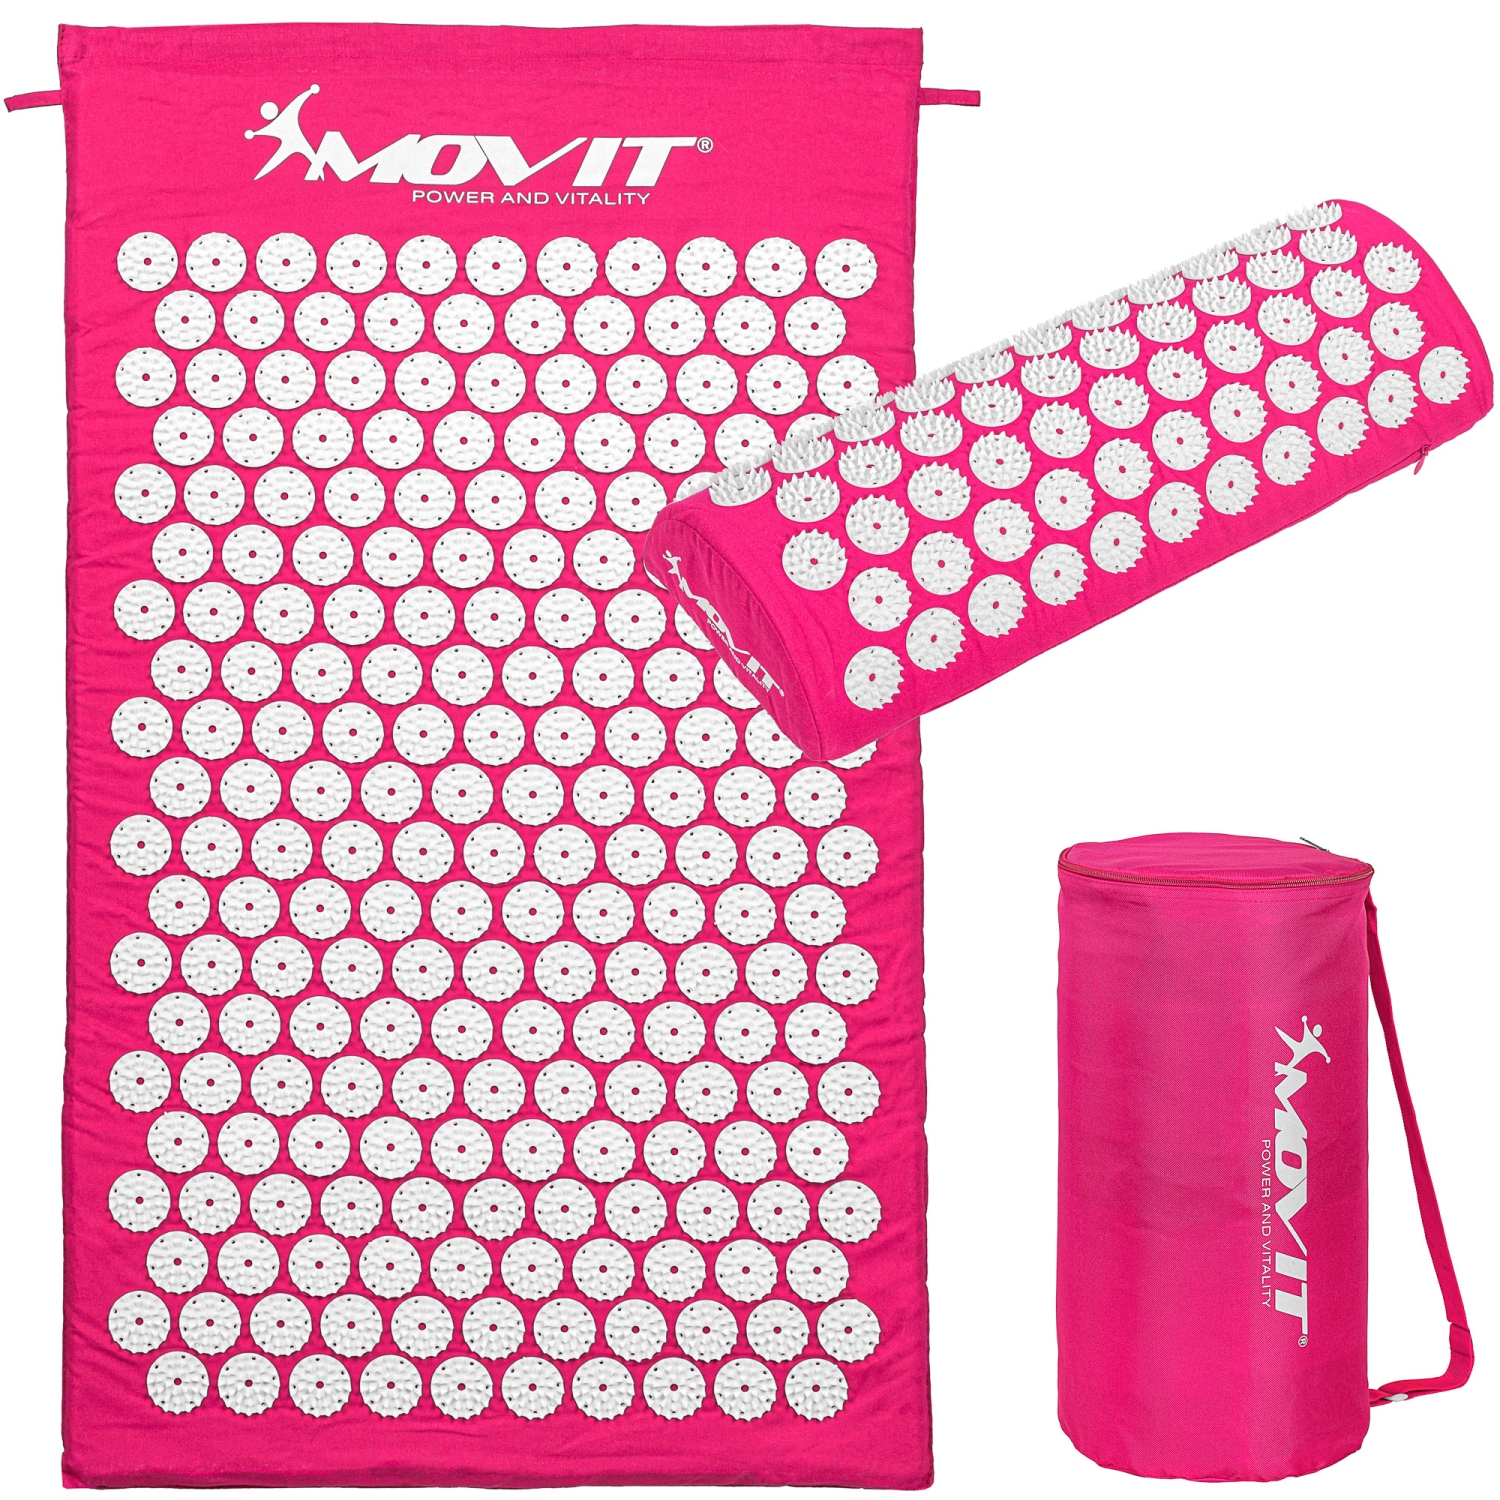 Spijkermat – Acupressuur mat – Shakti mat – Met kussen – Inclusief draagtas – 75 x 44 x 2.5 cm – Roze